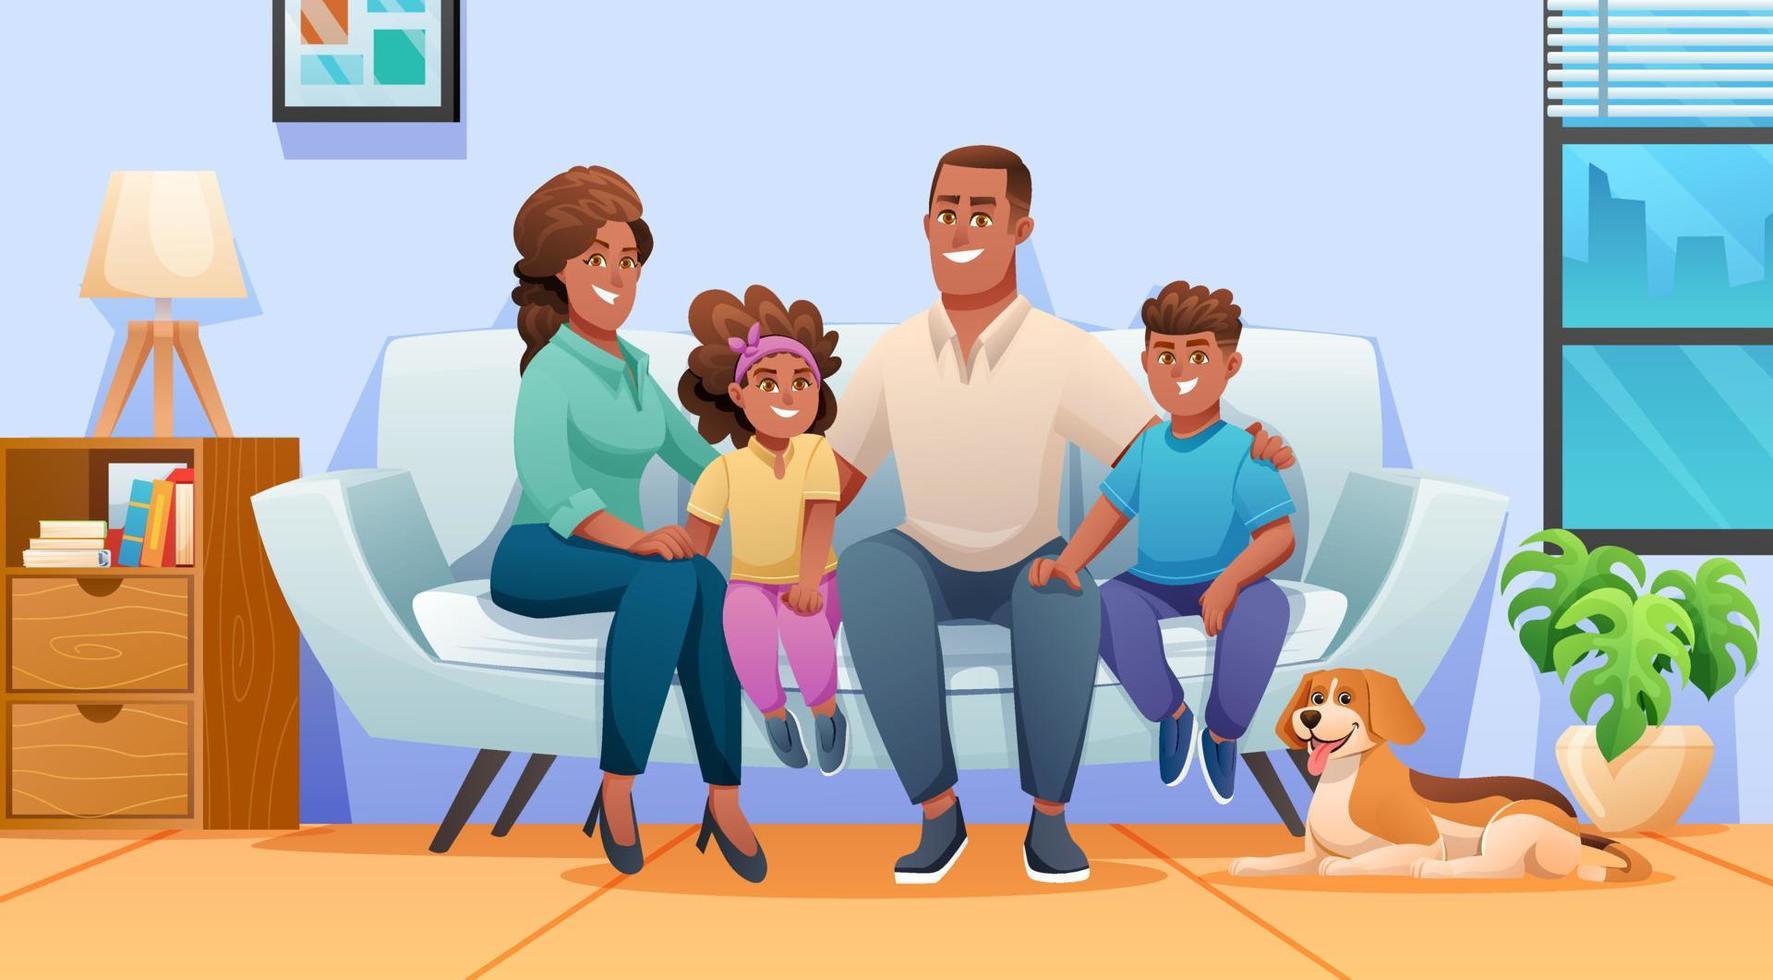 gelukkige familie zittend op de bank samen thuis met vader, moeder, kinderen en een huisdier. familie illustratie in cartoon-stijl vector